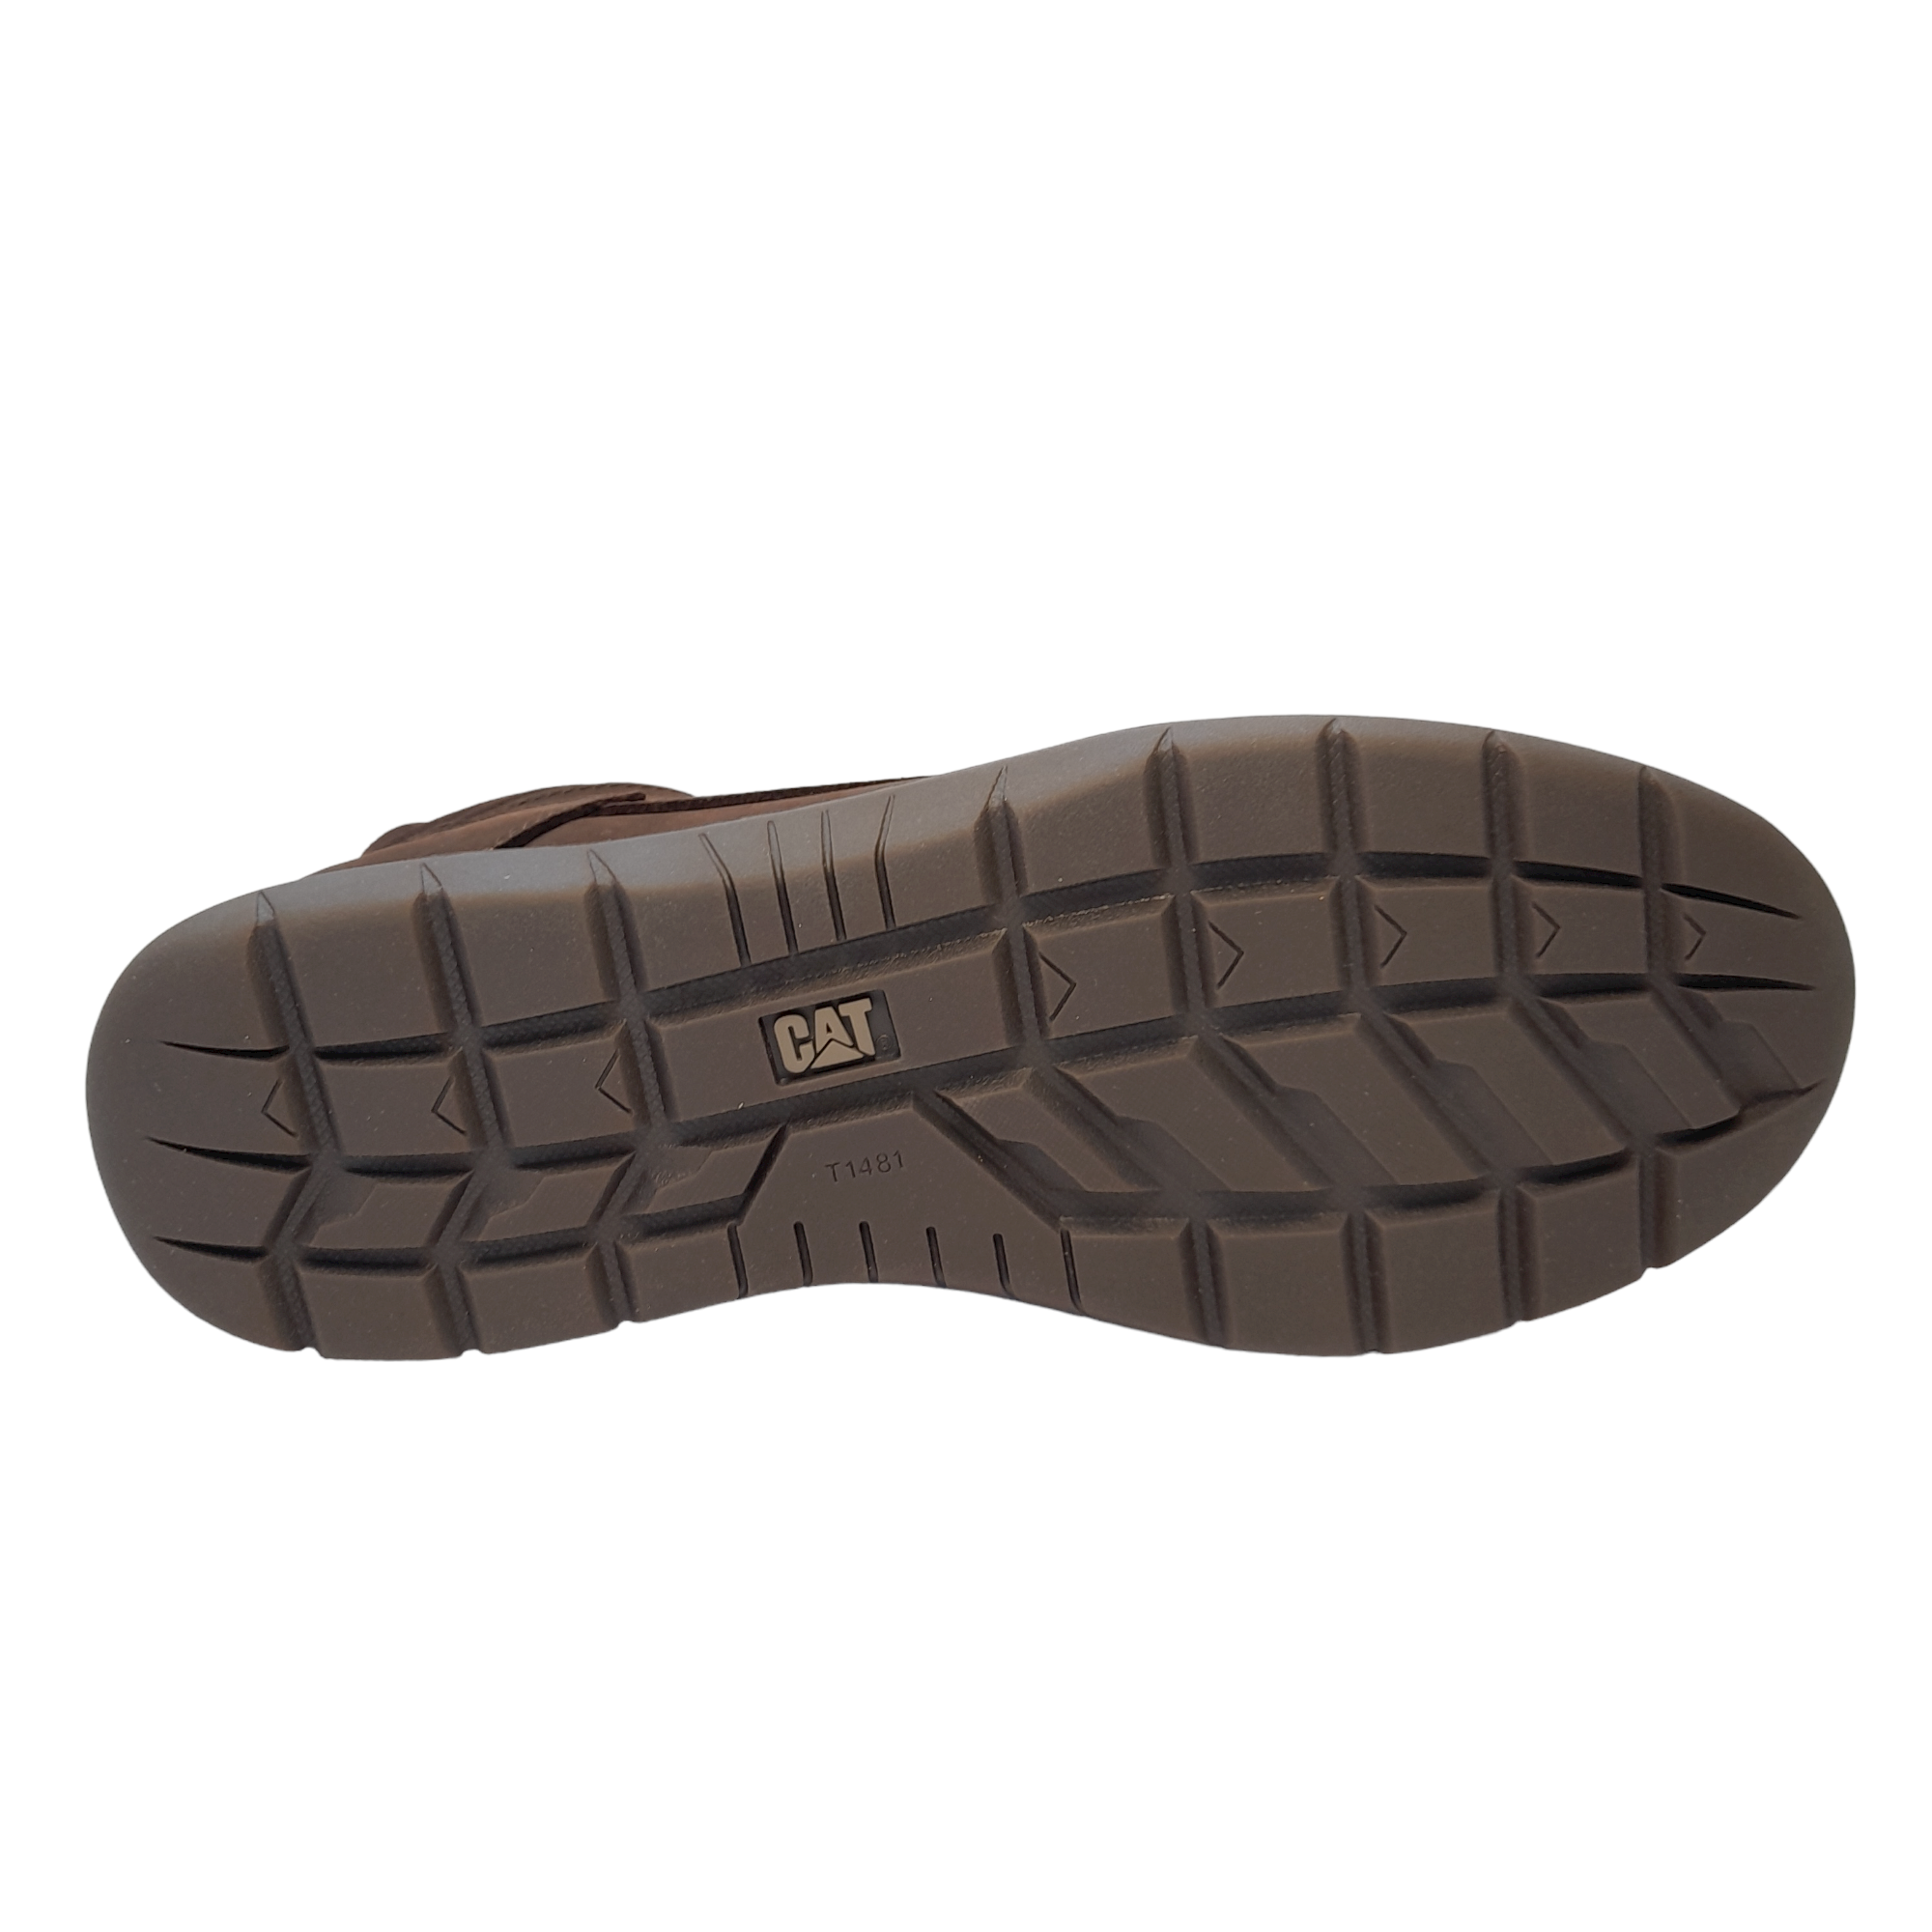 Roamer Mid 2.0 - shoe&me - Caterpillar - Boot - Boots, Mens, Winter